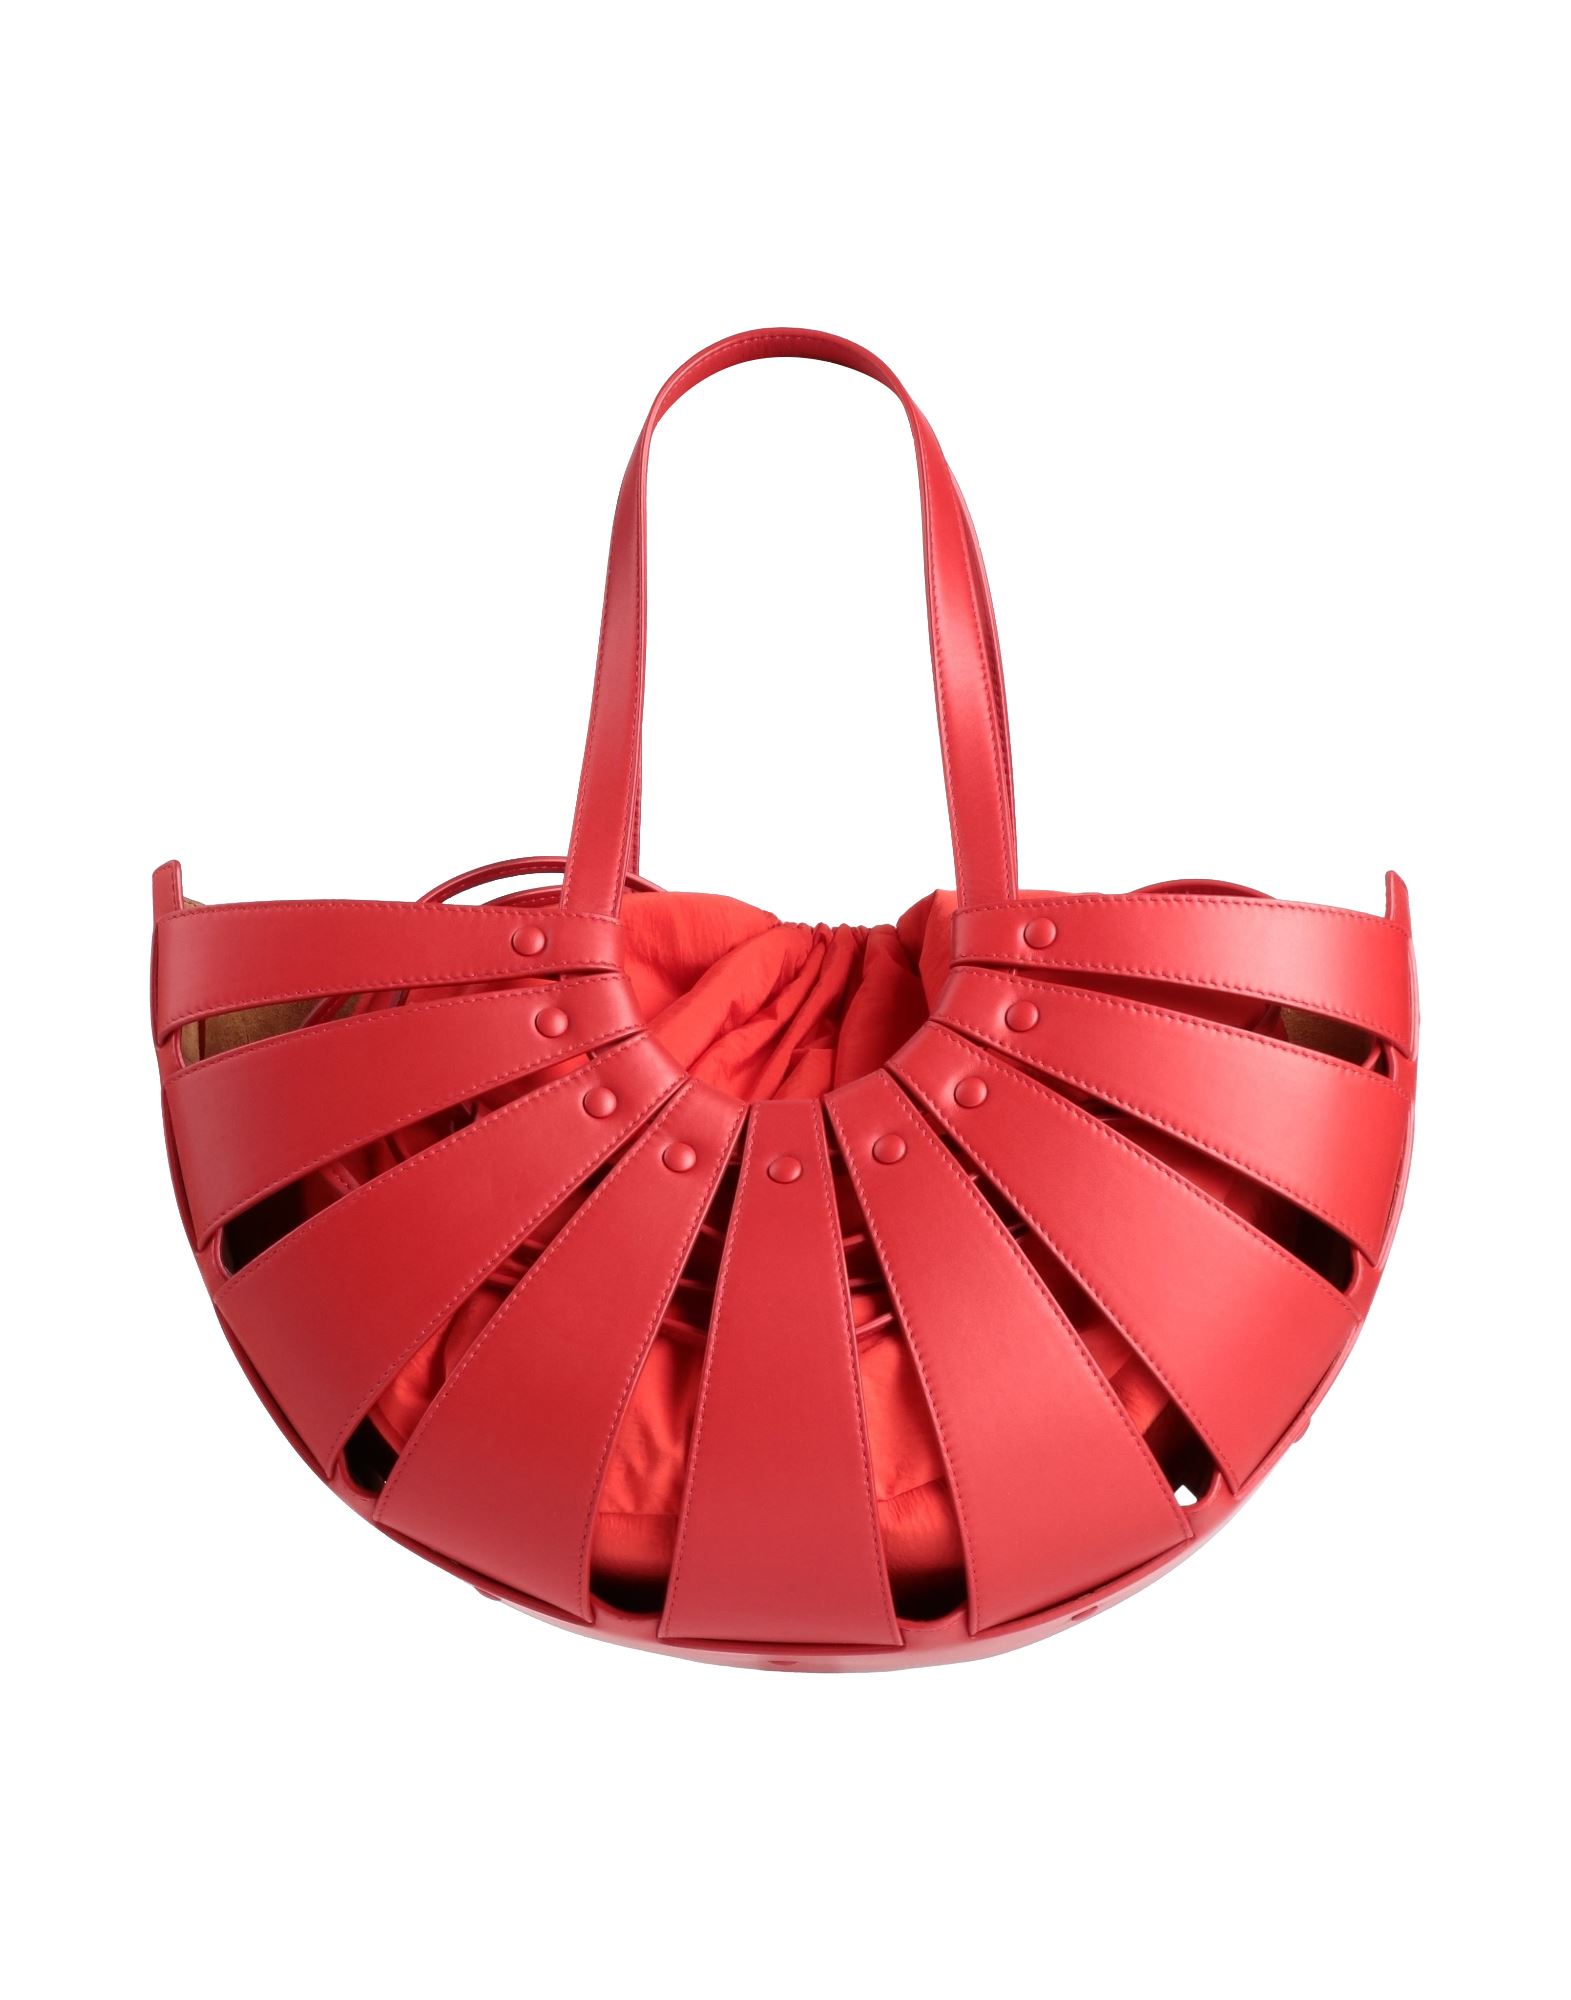 Bottega Veneta Handbags In Red